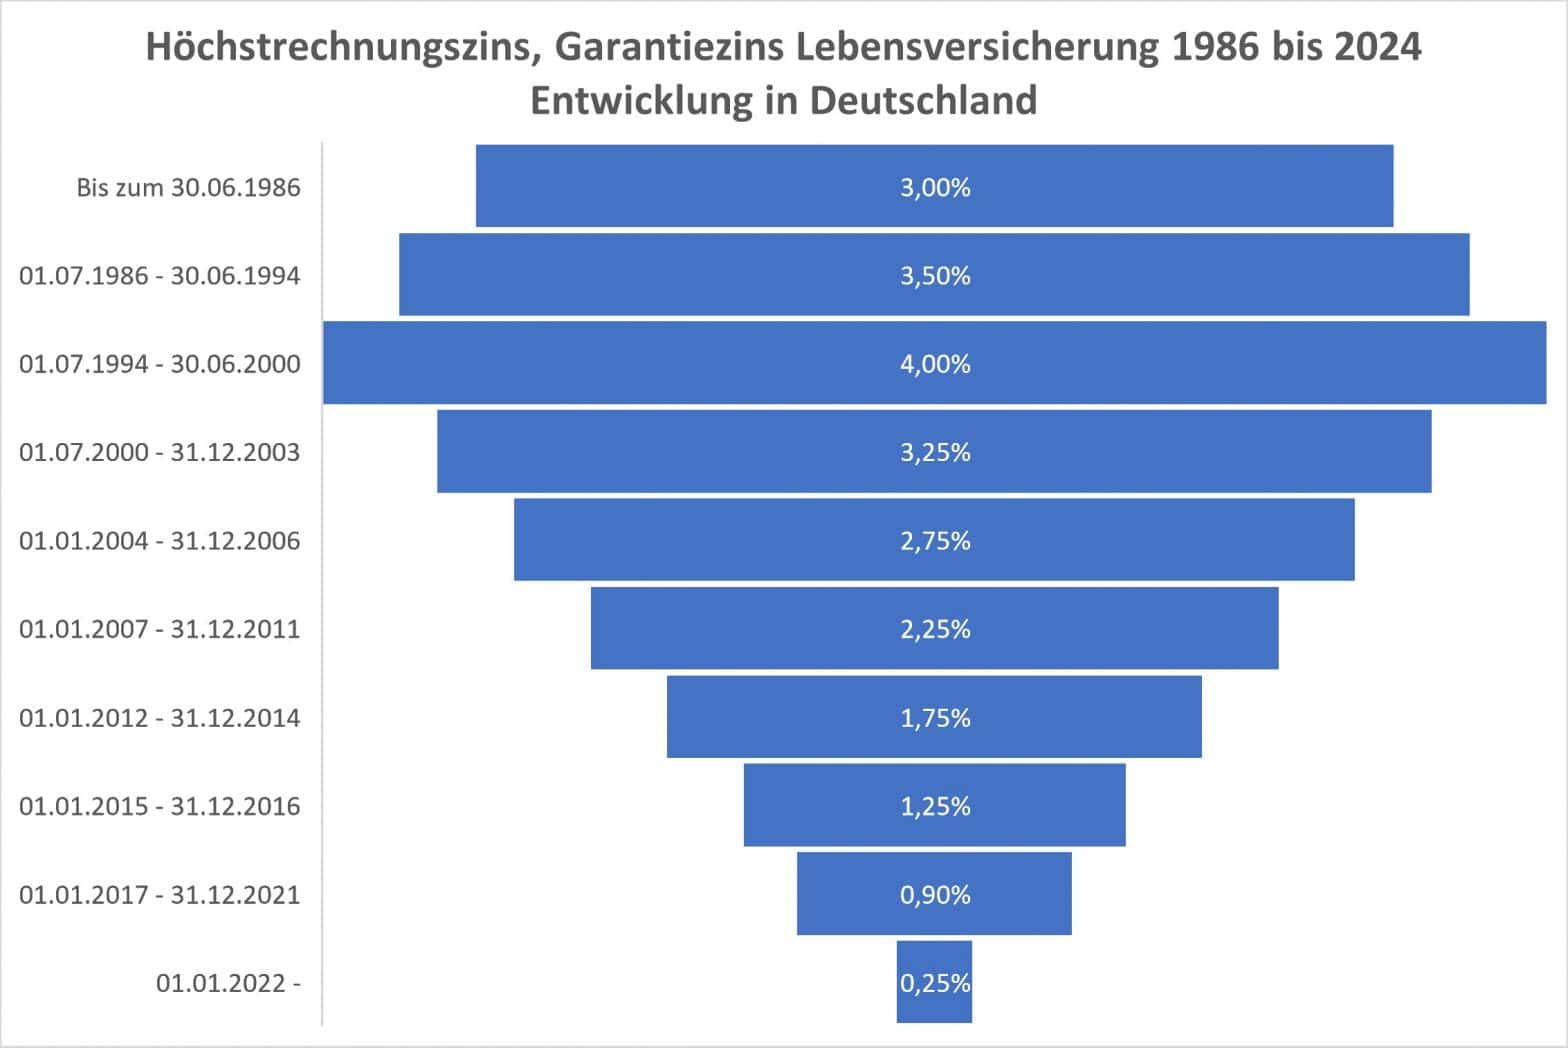 Garantiezins oder Höchstrechnungszins Lebensversicherung, Definition, Entwicklung in Deutschland Tabelle, Liste und aktueller Zinssatz 2024.